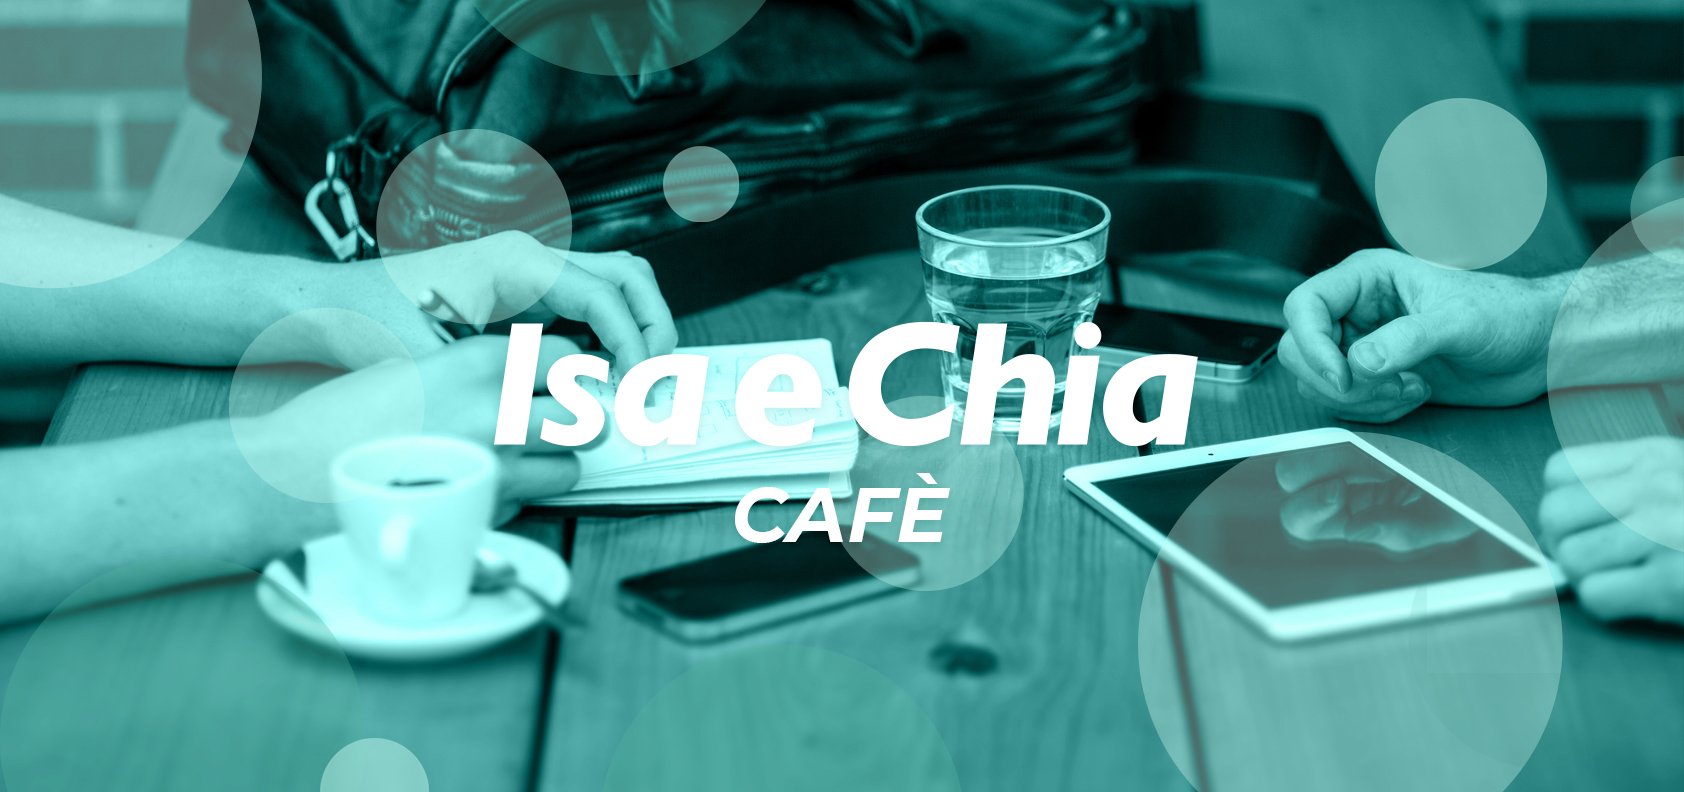 Isa e Chia Cafè, l’angolo delle chiacchiere in libertà (12/07/22)